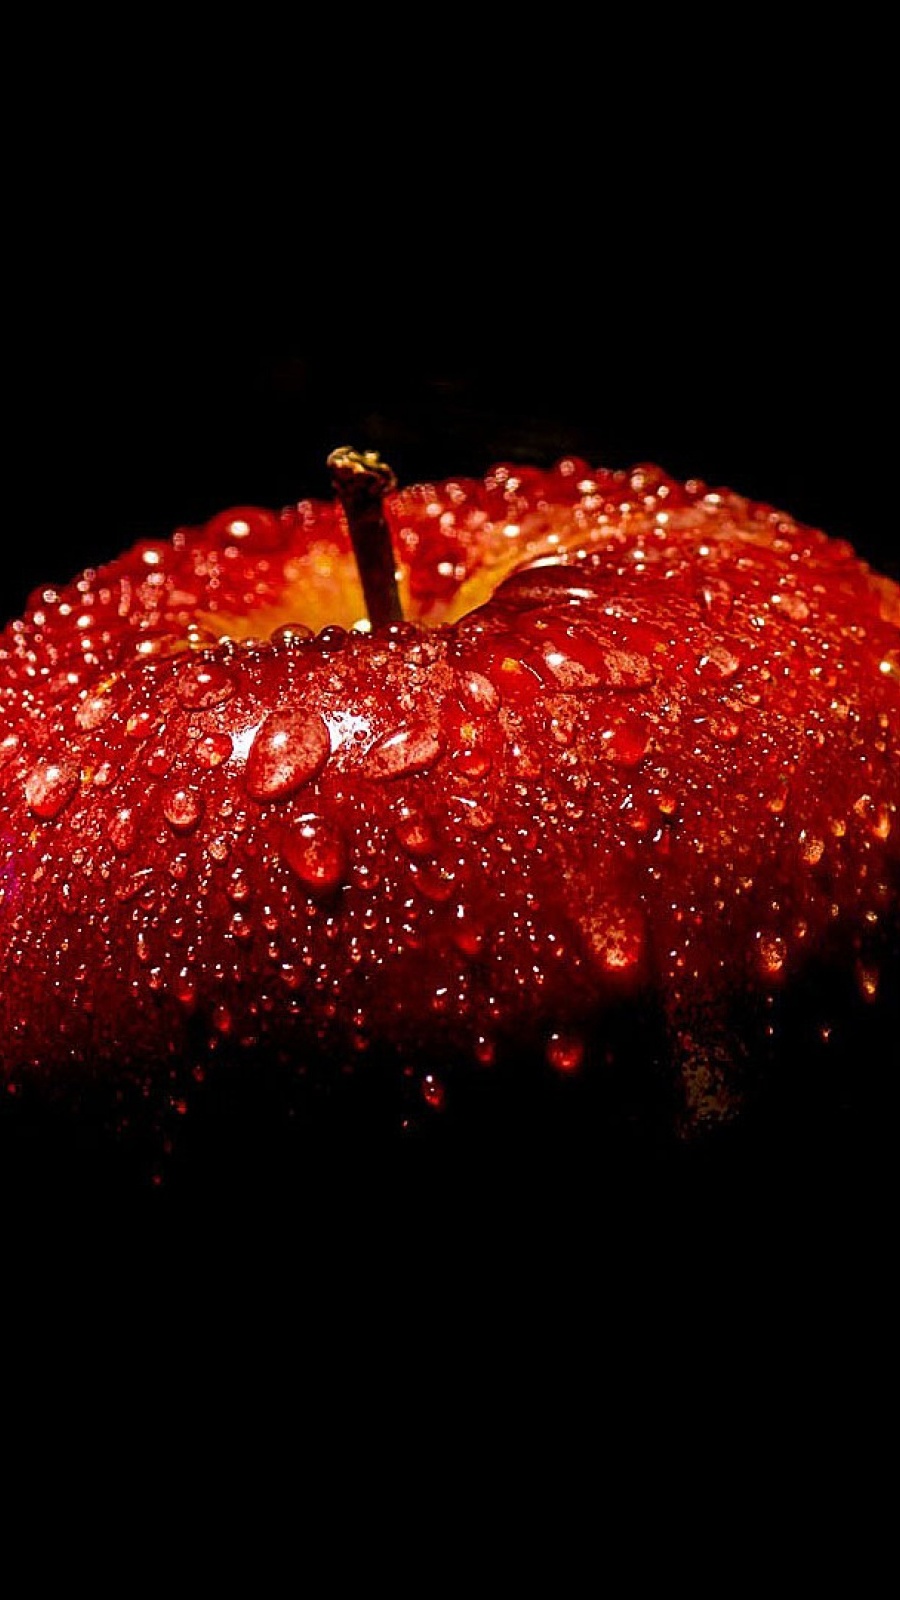 02 2 900 Apple L - Water Drops On Fruit - HD Wallpaper 